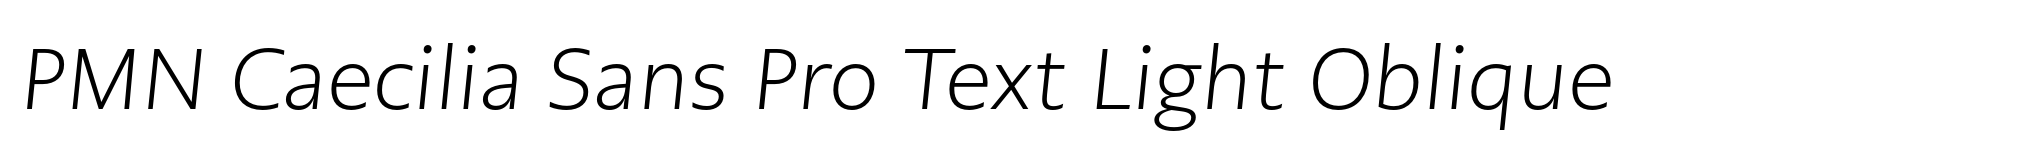 PMN Caecilia Sans Pro Text Light Oblique image